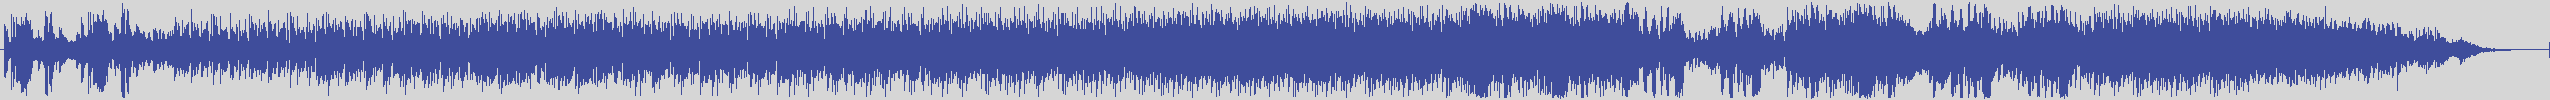 noclouds_chillout [NOC009] K Groove - Five Plus Four [Original Mix] audio wave form